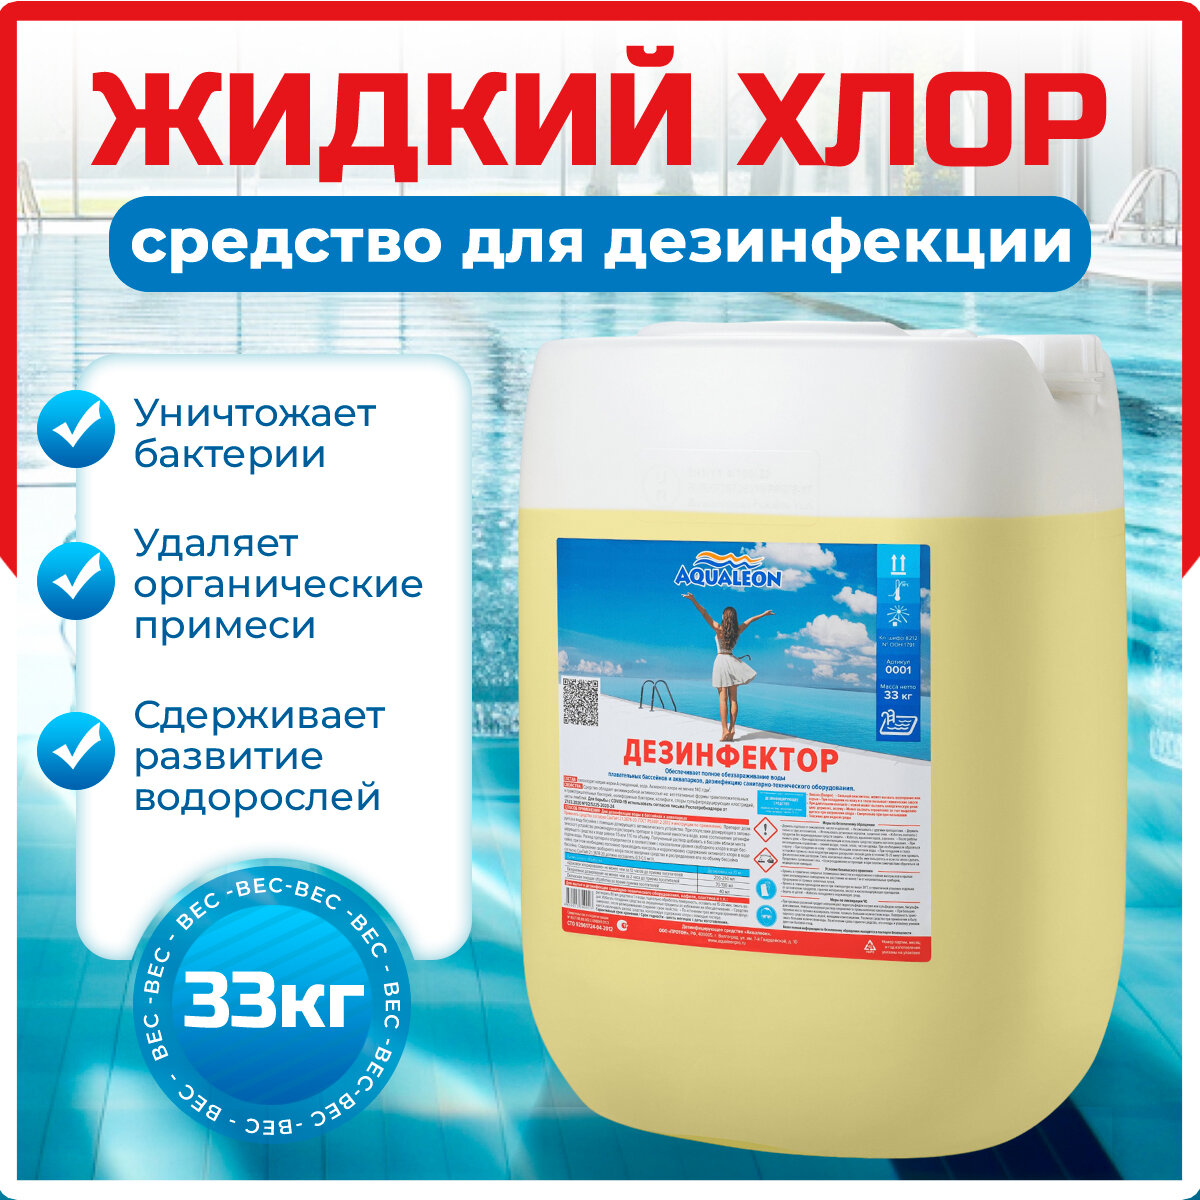 Aqualeon Дезинфектор жидкий 33 кг 30 л 0001